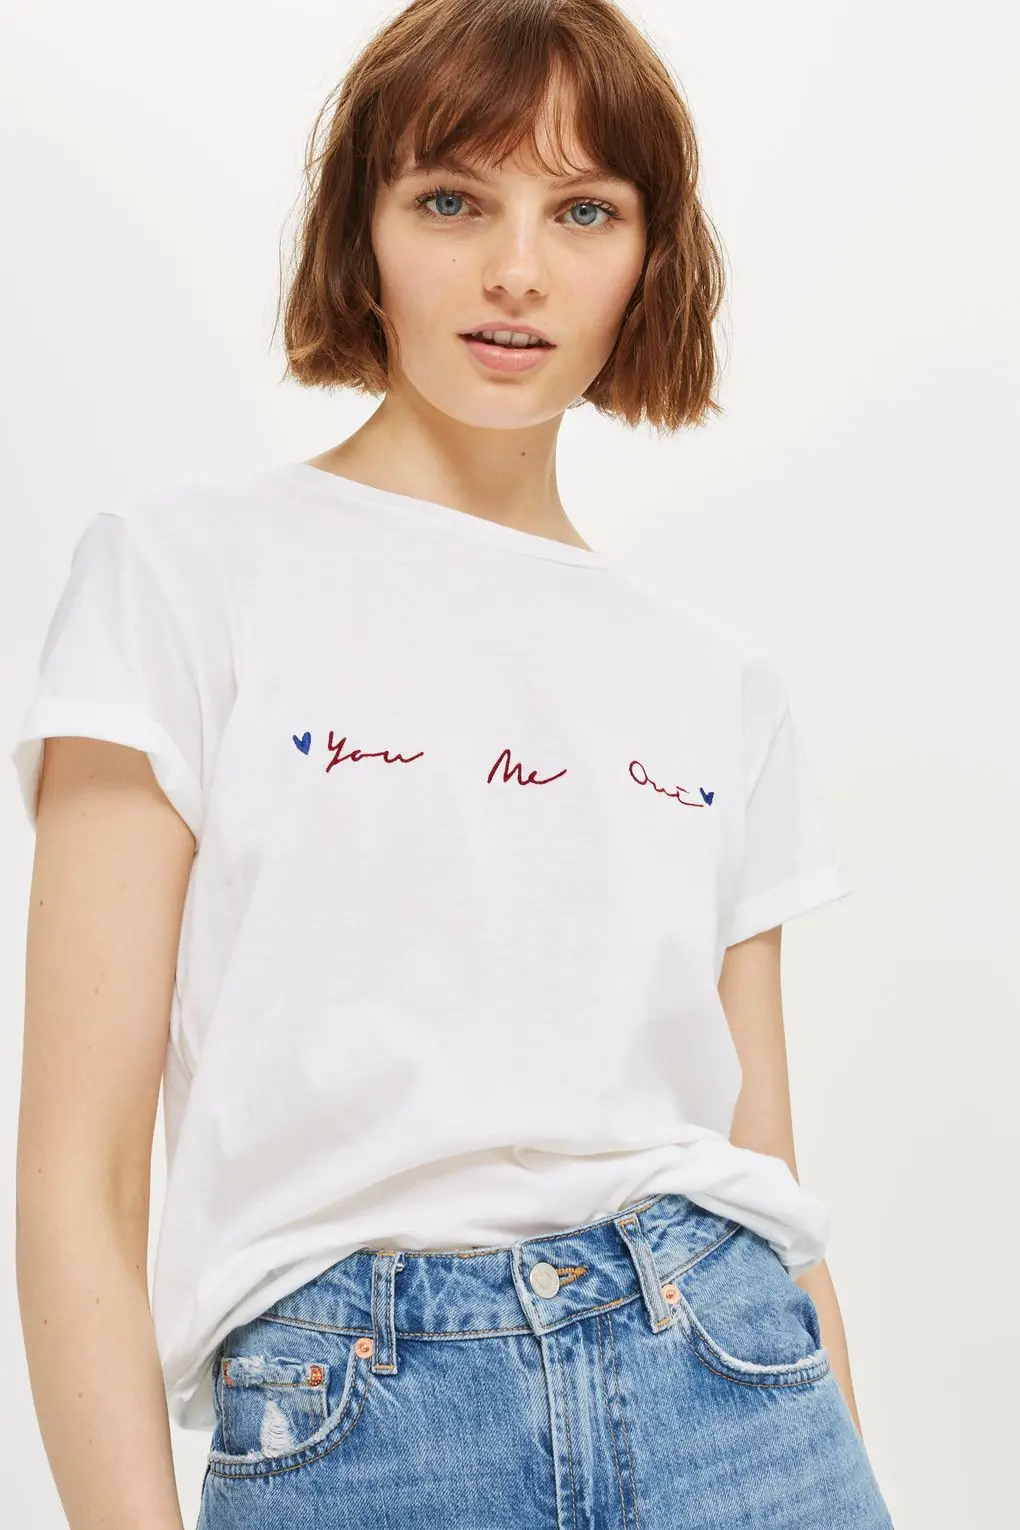 Tips memadupadankan t-shirt atau kaos slogan yang bikin penampilan menarik. (Image: topshop.com)